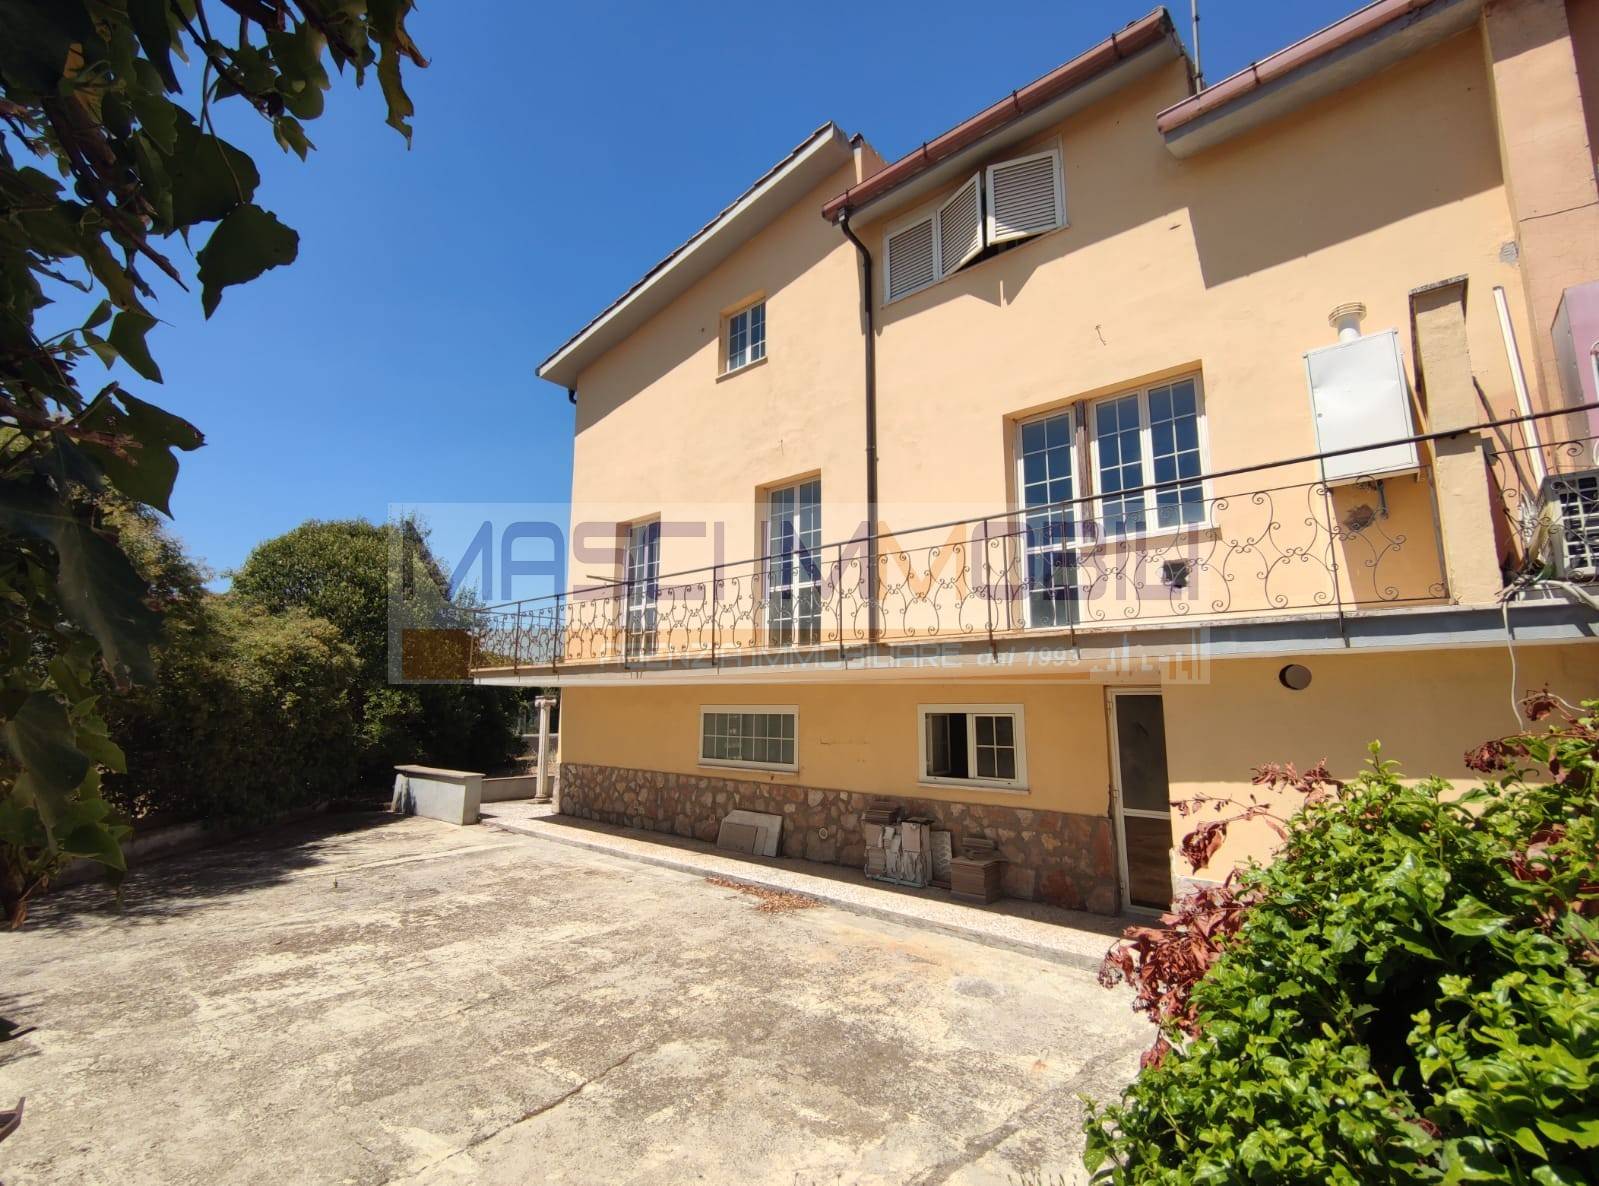 Villa Bifamiliare in vendita a Fiano Romano, 7 locali, prezzo € 289.000 | CambioCasa.it